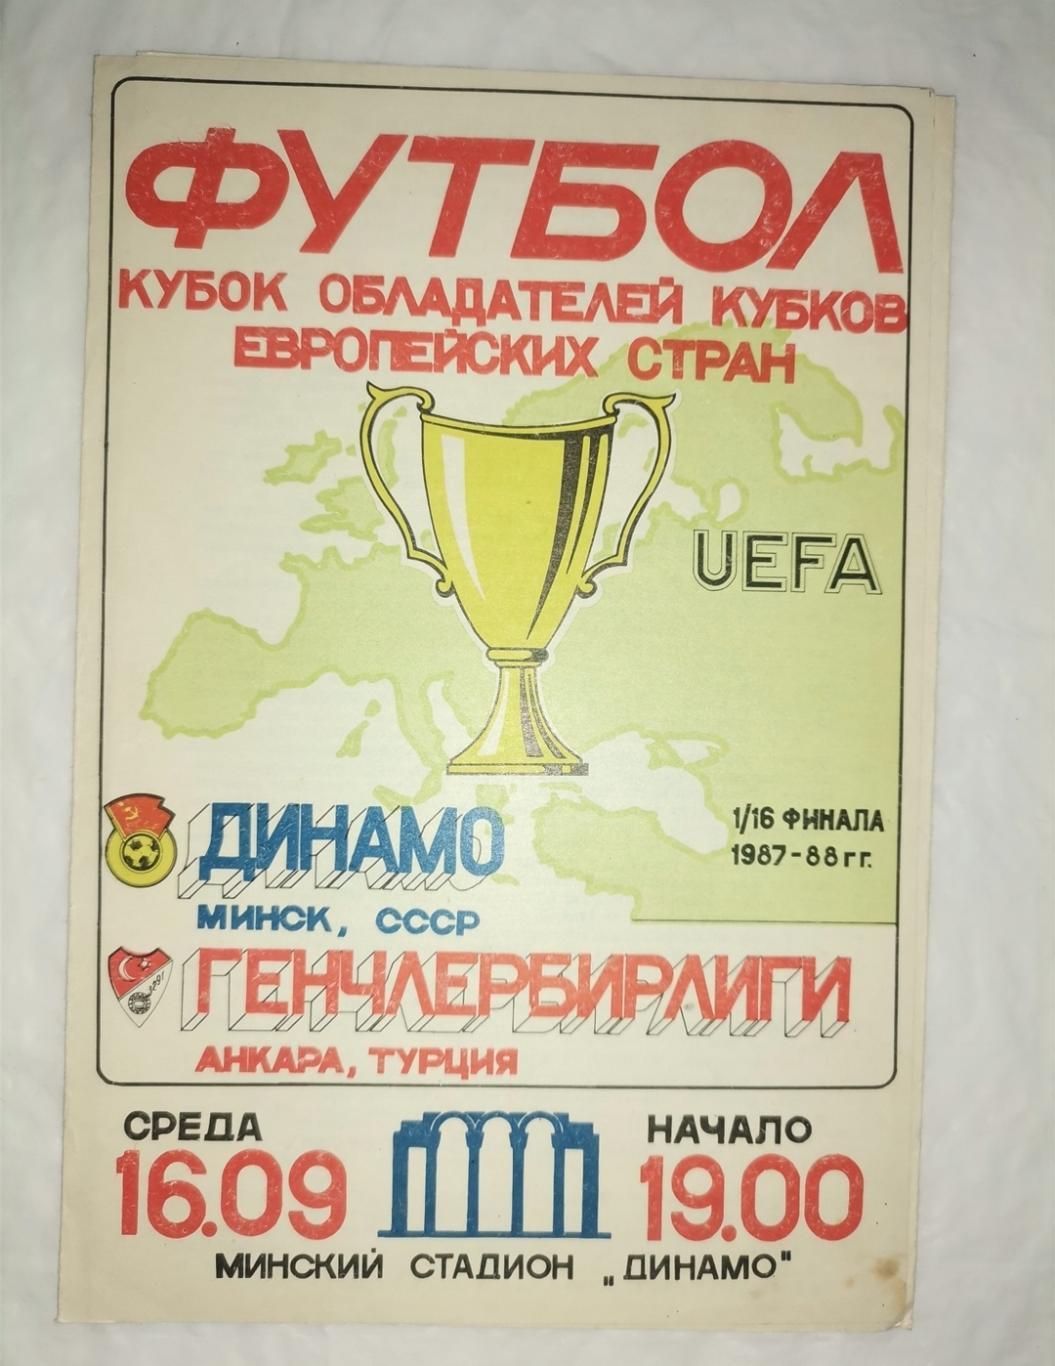 Динамо Минск - Генчлербирлиги Турция КОК 1987